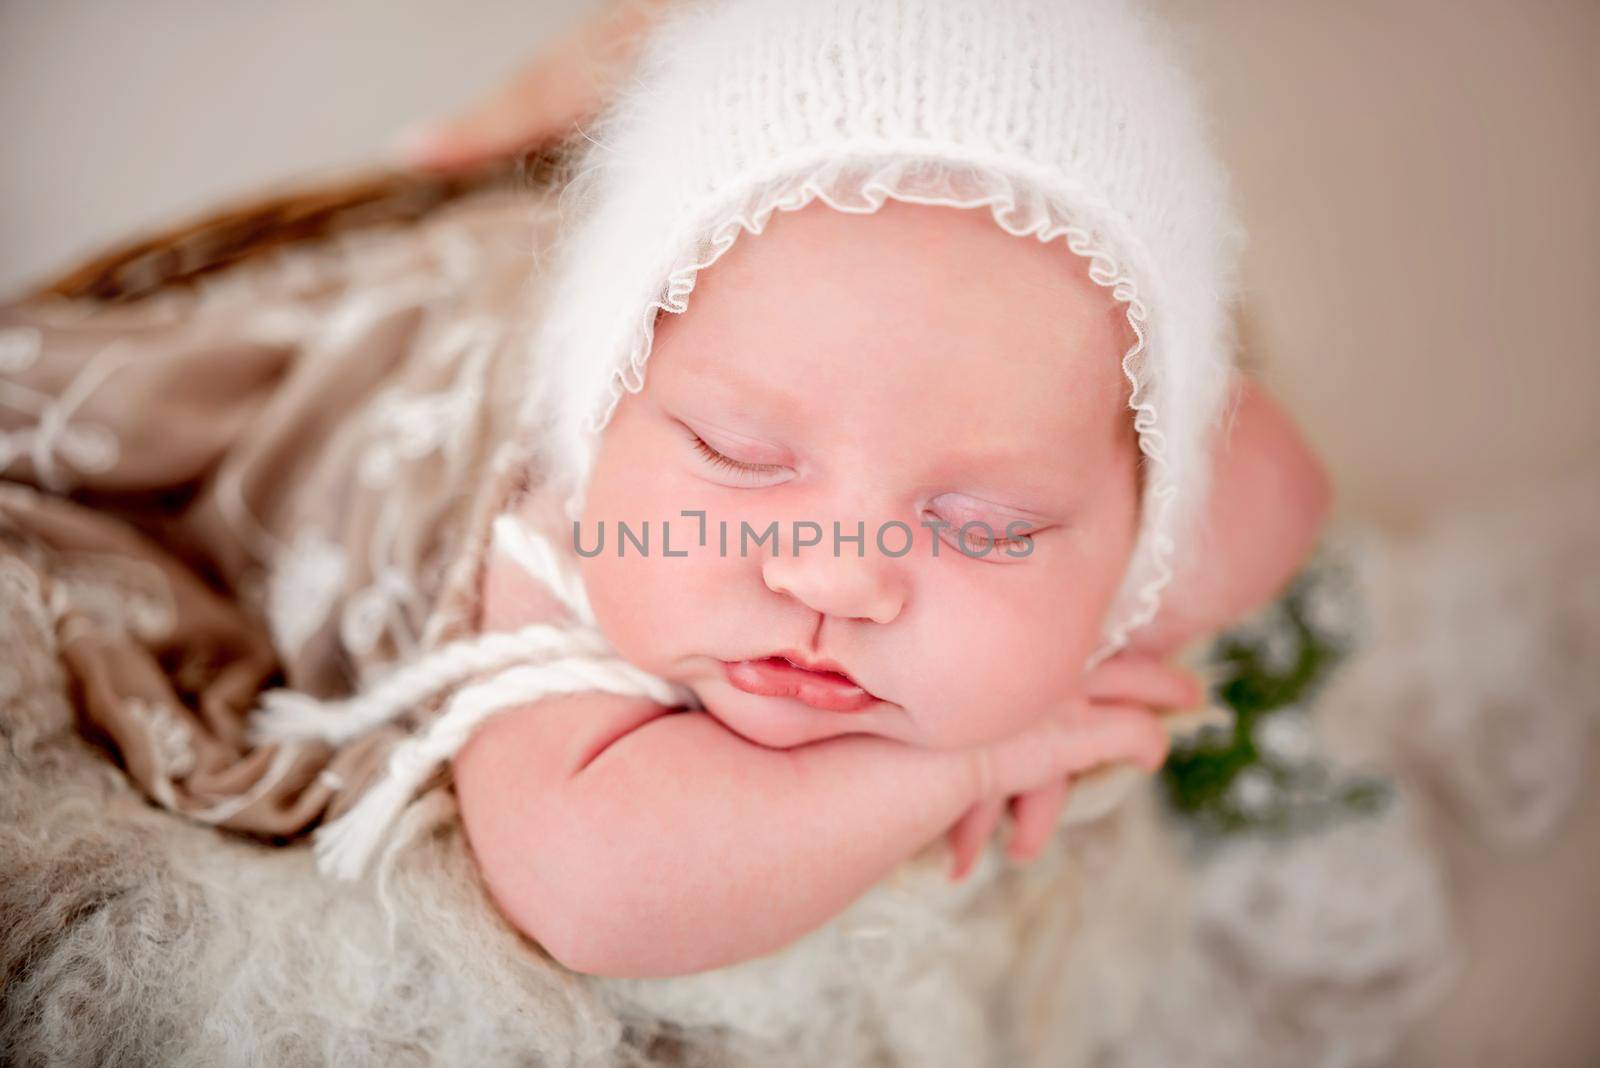 Newborn baby girl photoshoot by tan4ikk1